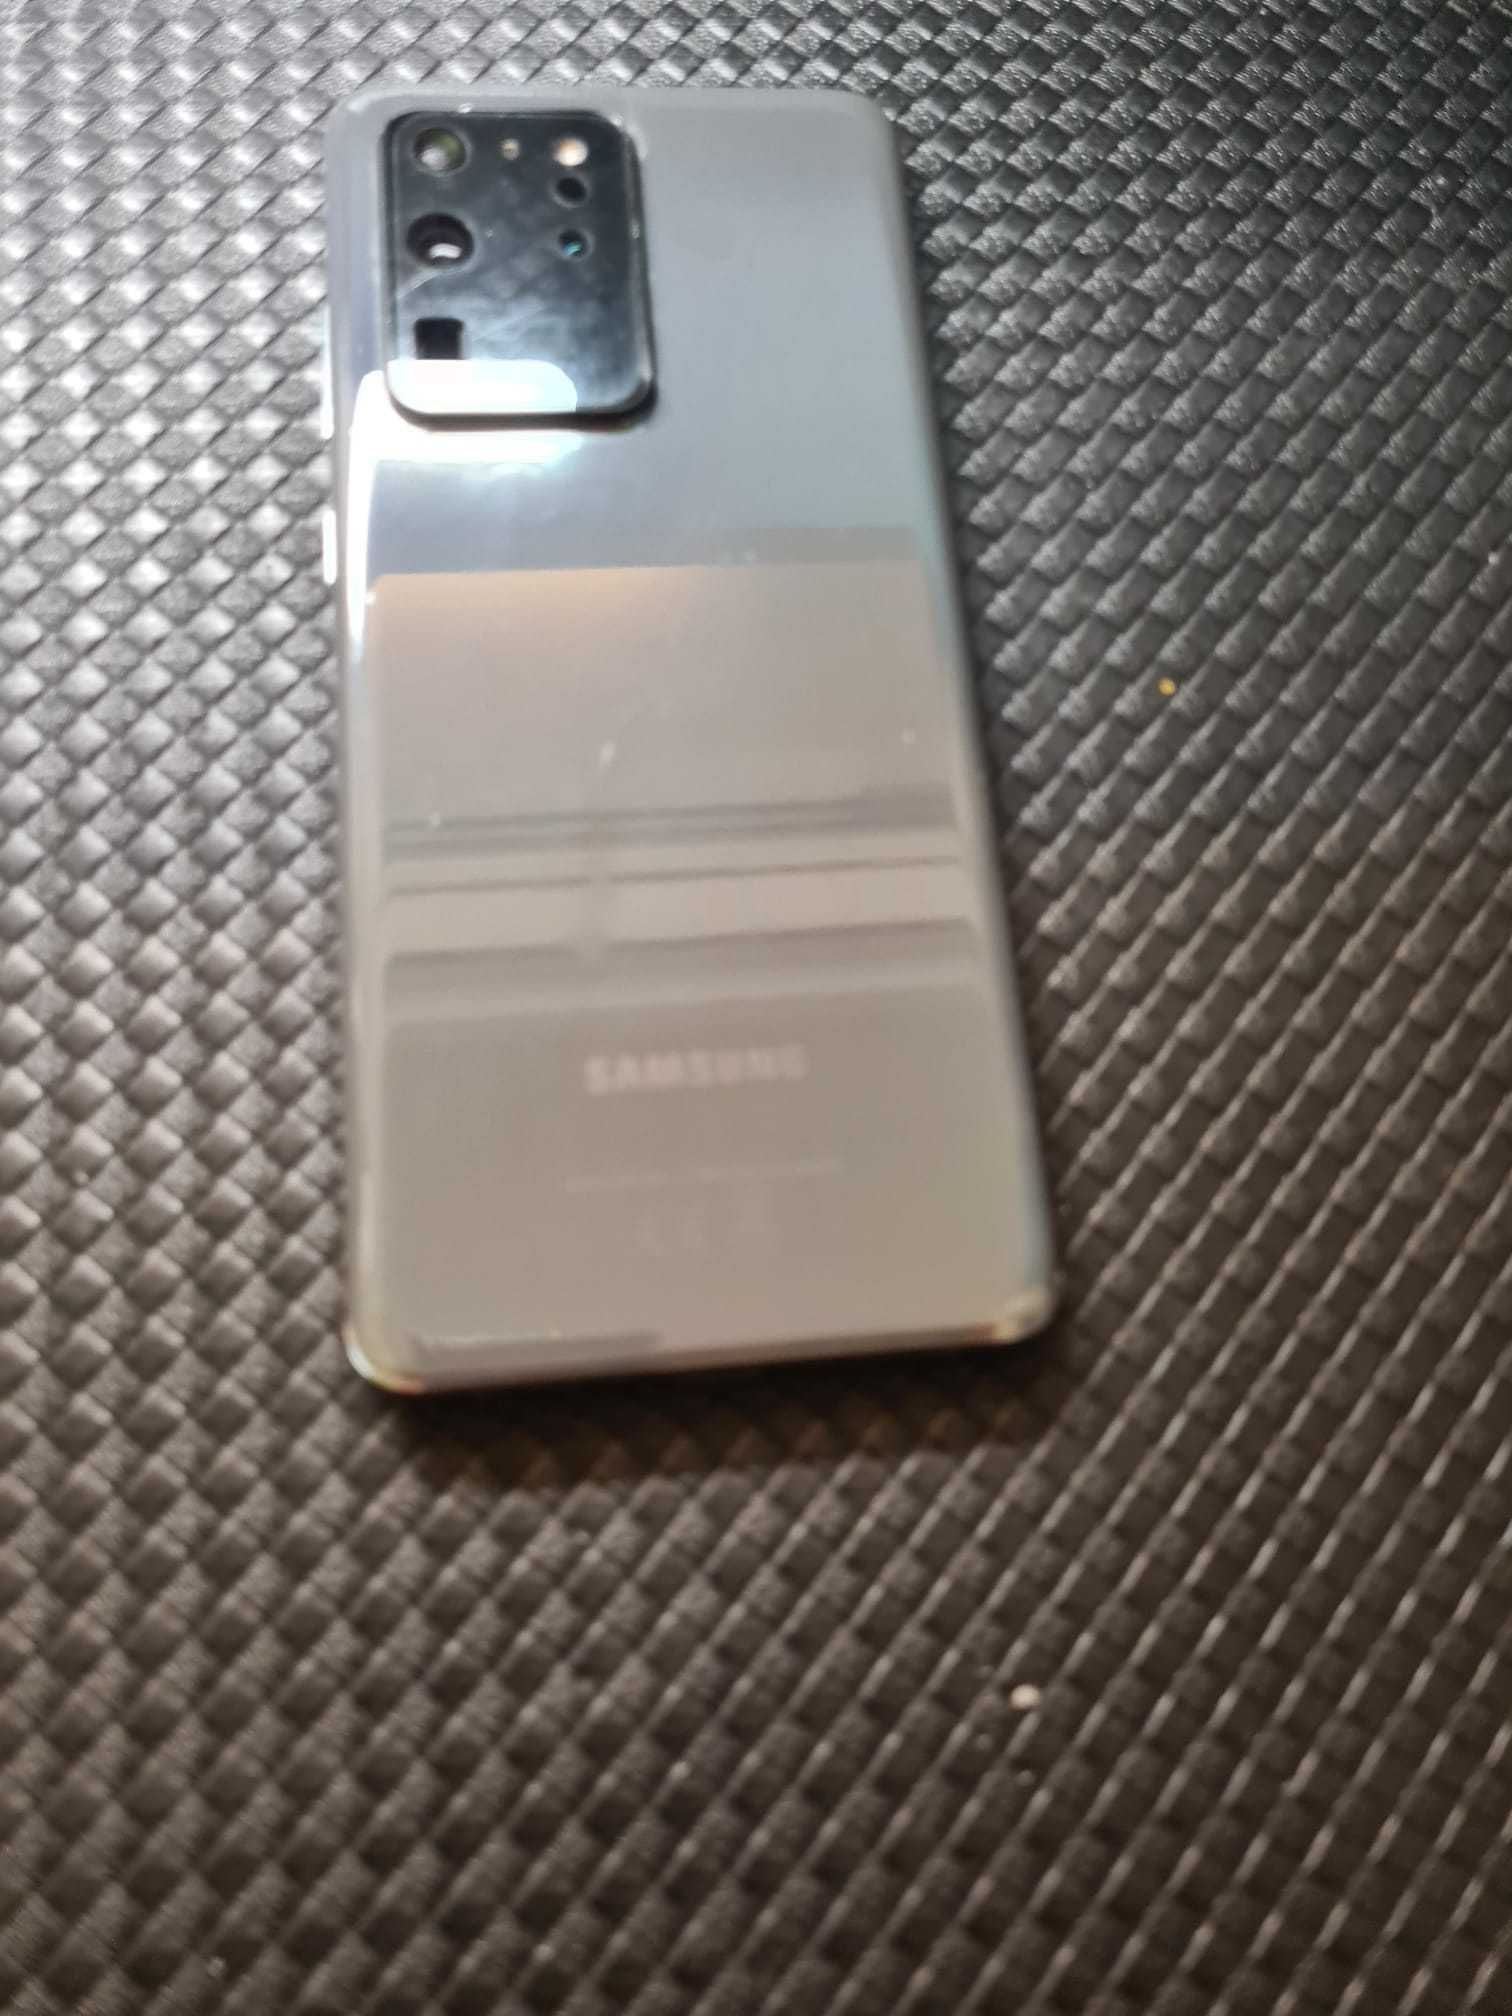 Samsung Galaxy S20 Ultra, Dual SIM, 128GB, 12GB RAM, 5G, Cosmic Gray